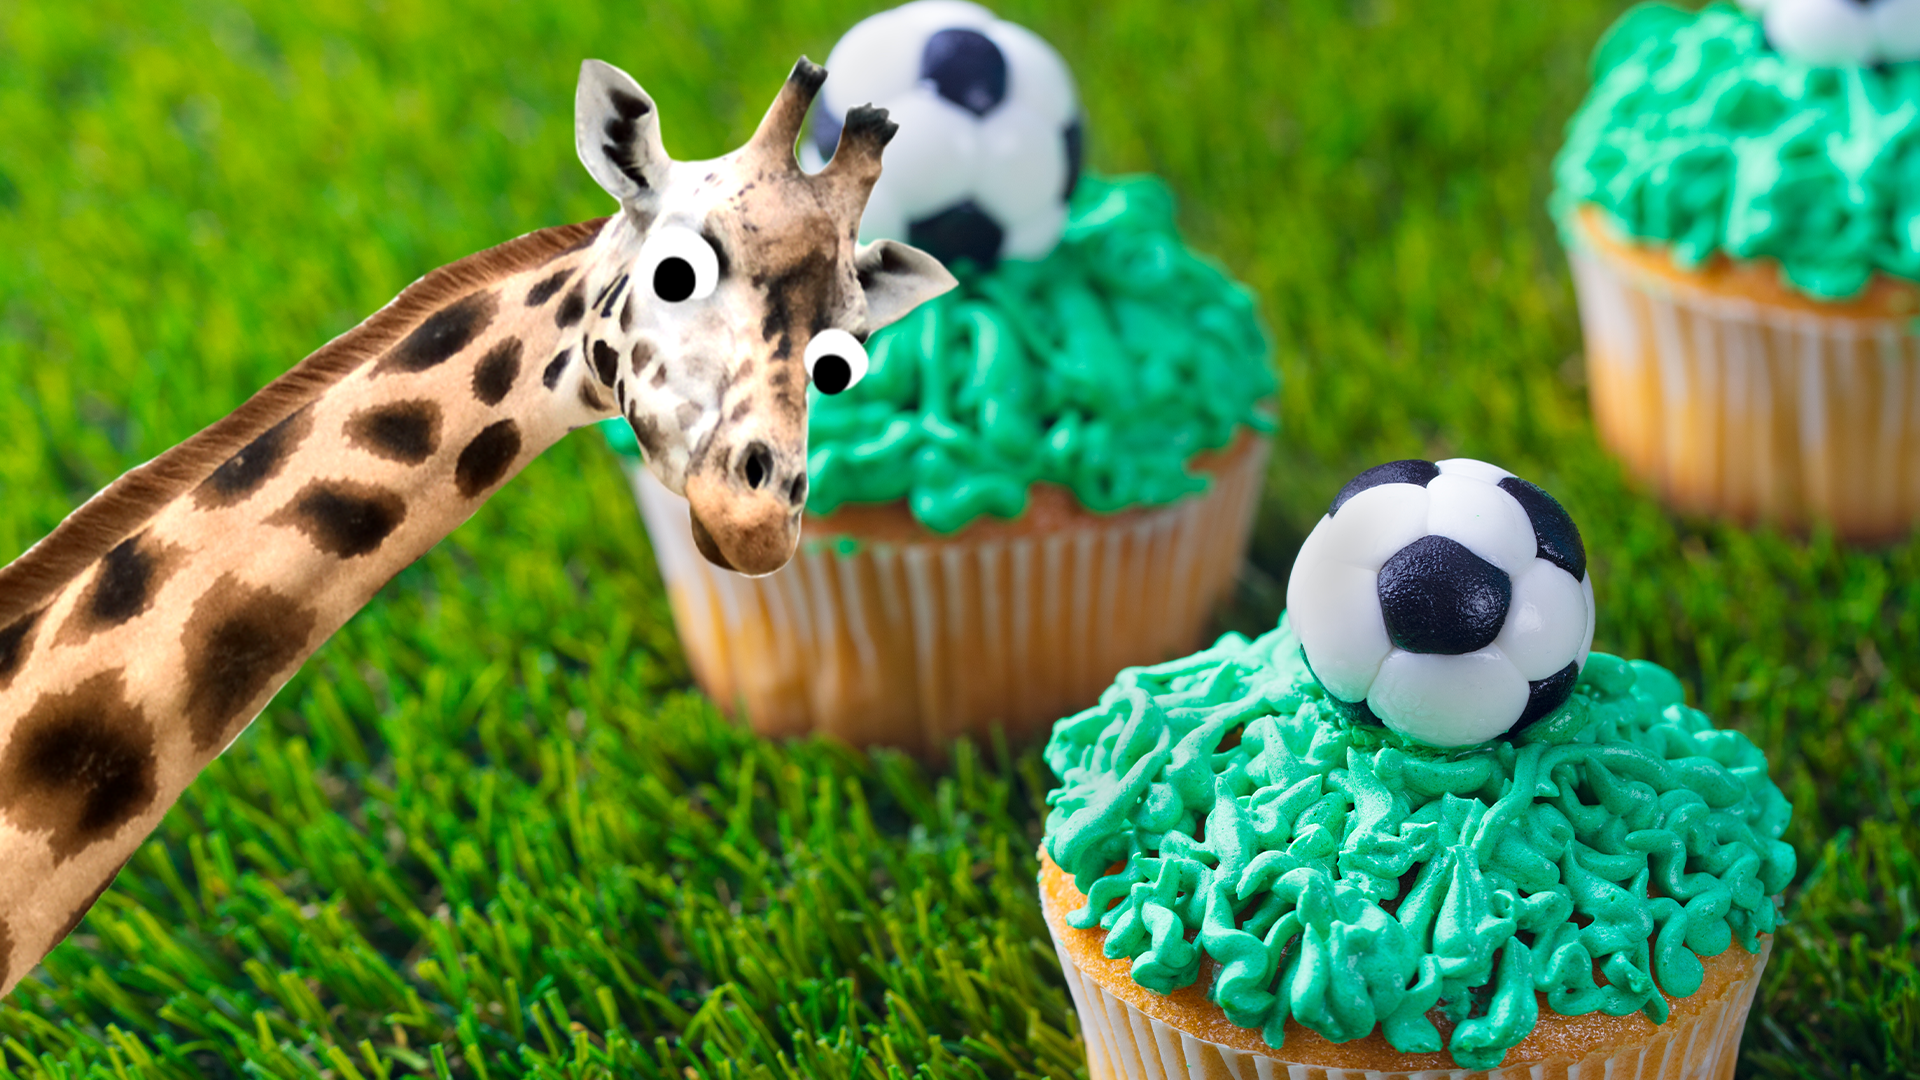 Beano giraffe and football fairy cakes